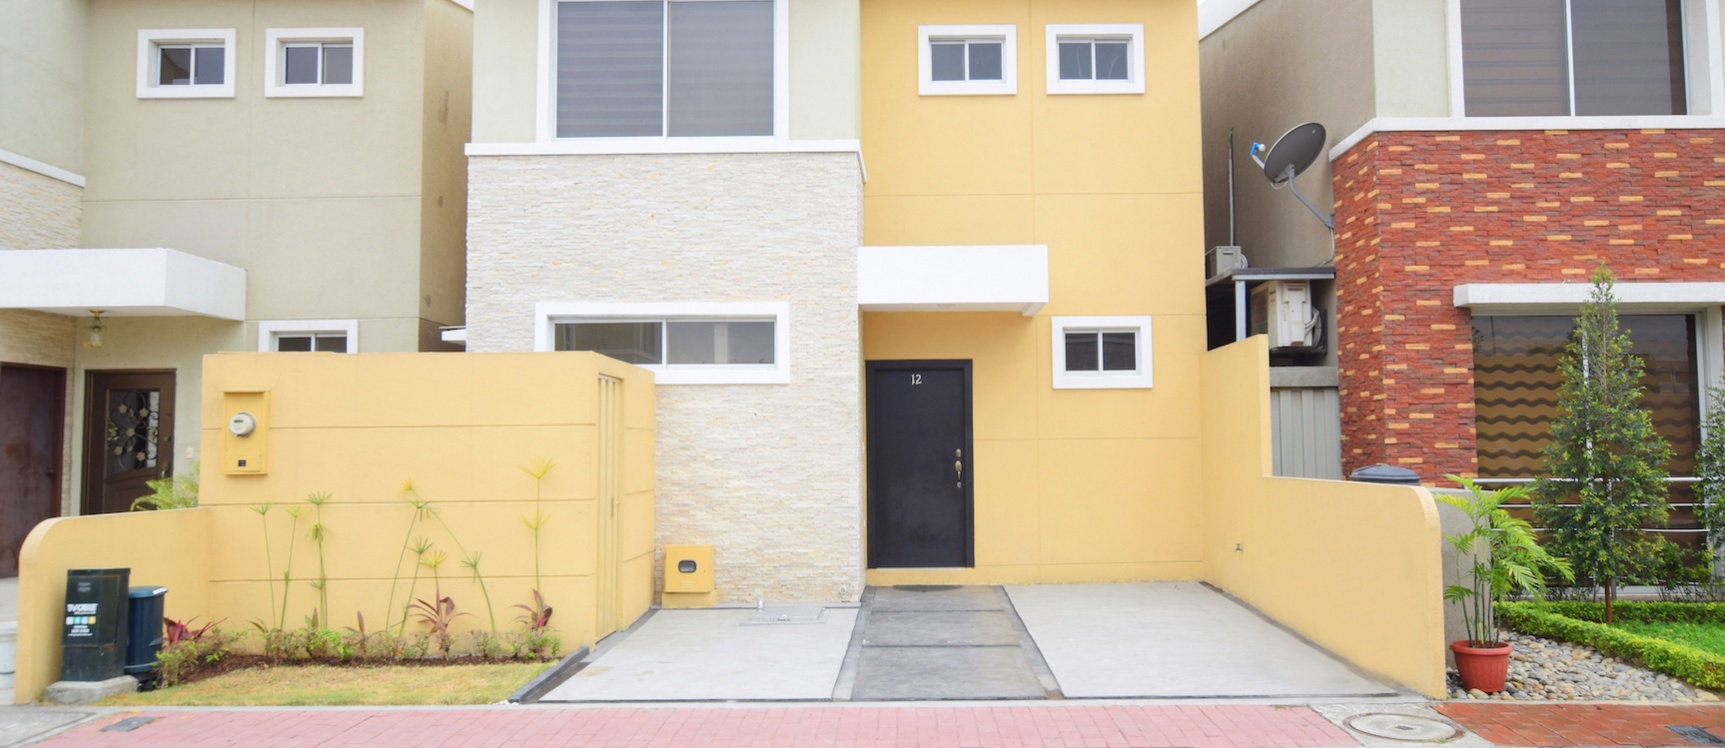 GeoBienes - Casa amoblada en alquiler en la Urbanización San Sebastián, Vía Samborondón - Plusvalia Guayaquil Casas de venta y alquiler Inmobiliaria Ecuador